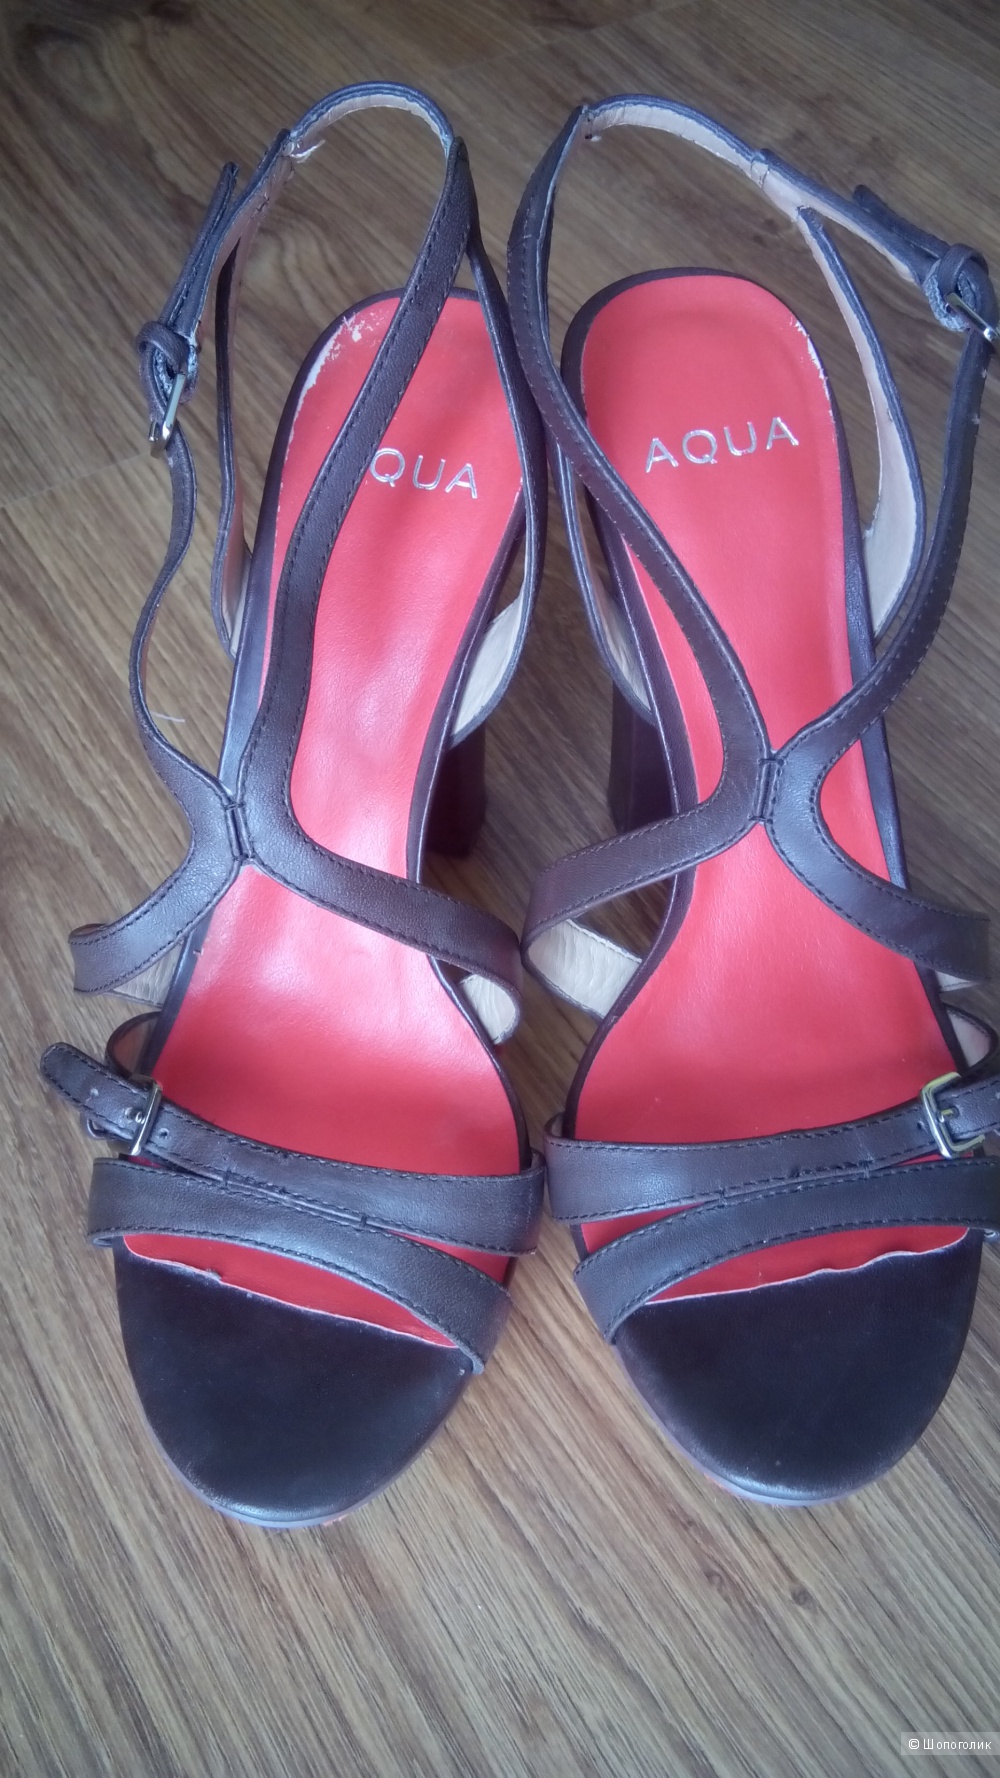 Красивые кожаные босоножки амер.бренда Aqua,7.5us